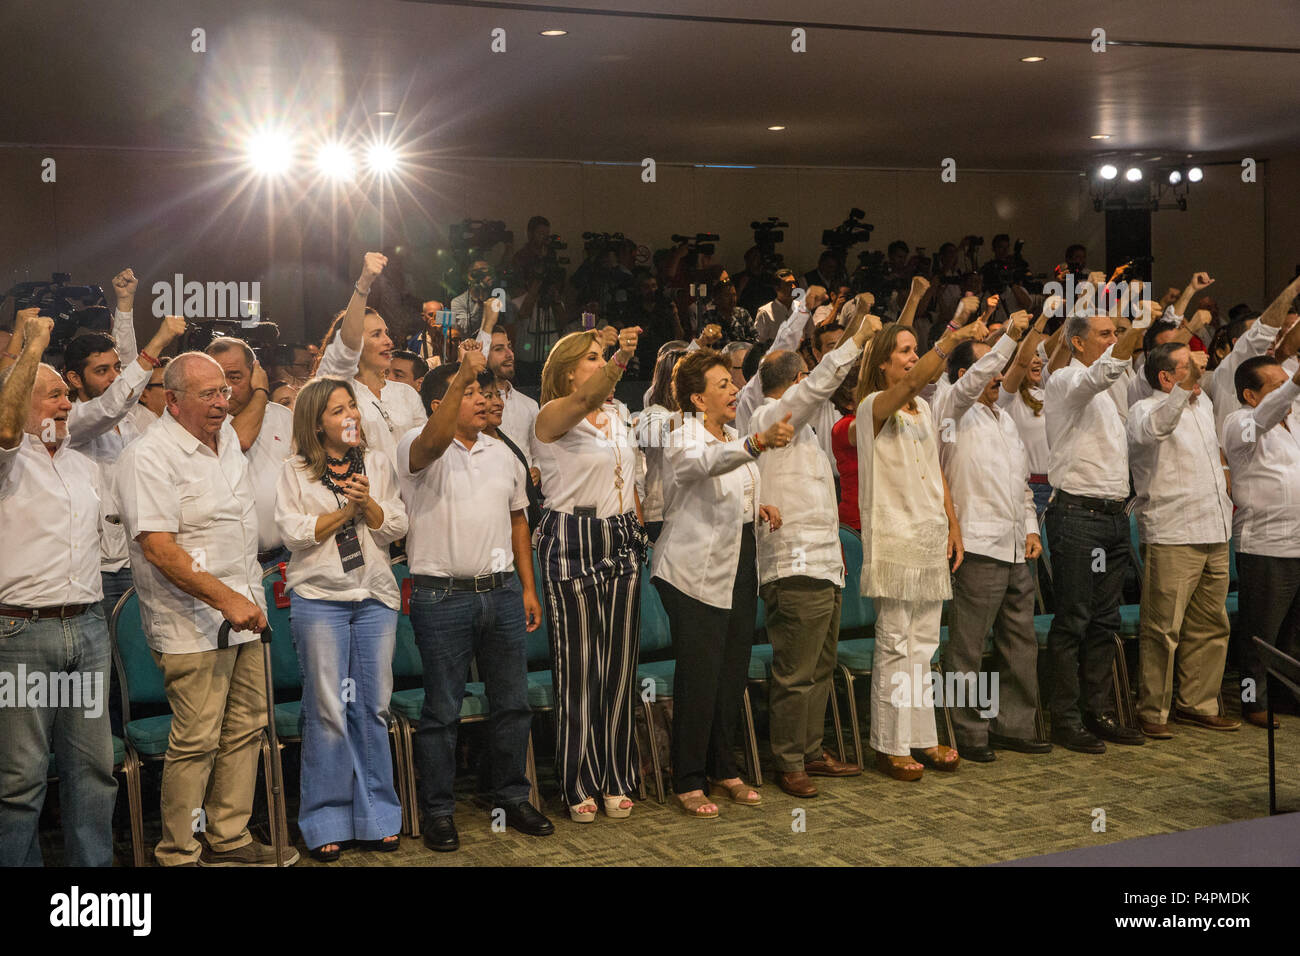 Un événement de campagne pour JosŽ Antonio Meade leader du Parti révolutionnaire institutionnel (PRI) et candidat à l'élection présidentielle, le 27 mai 2018, Campeche, Mexique. Banque D'Images